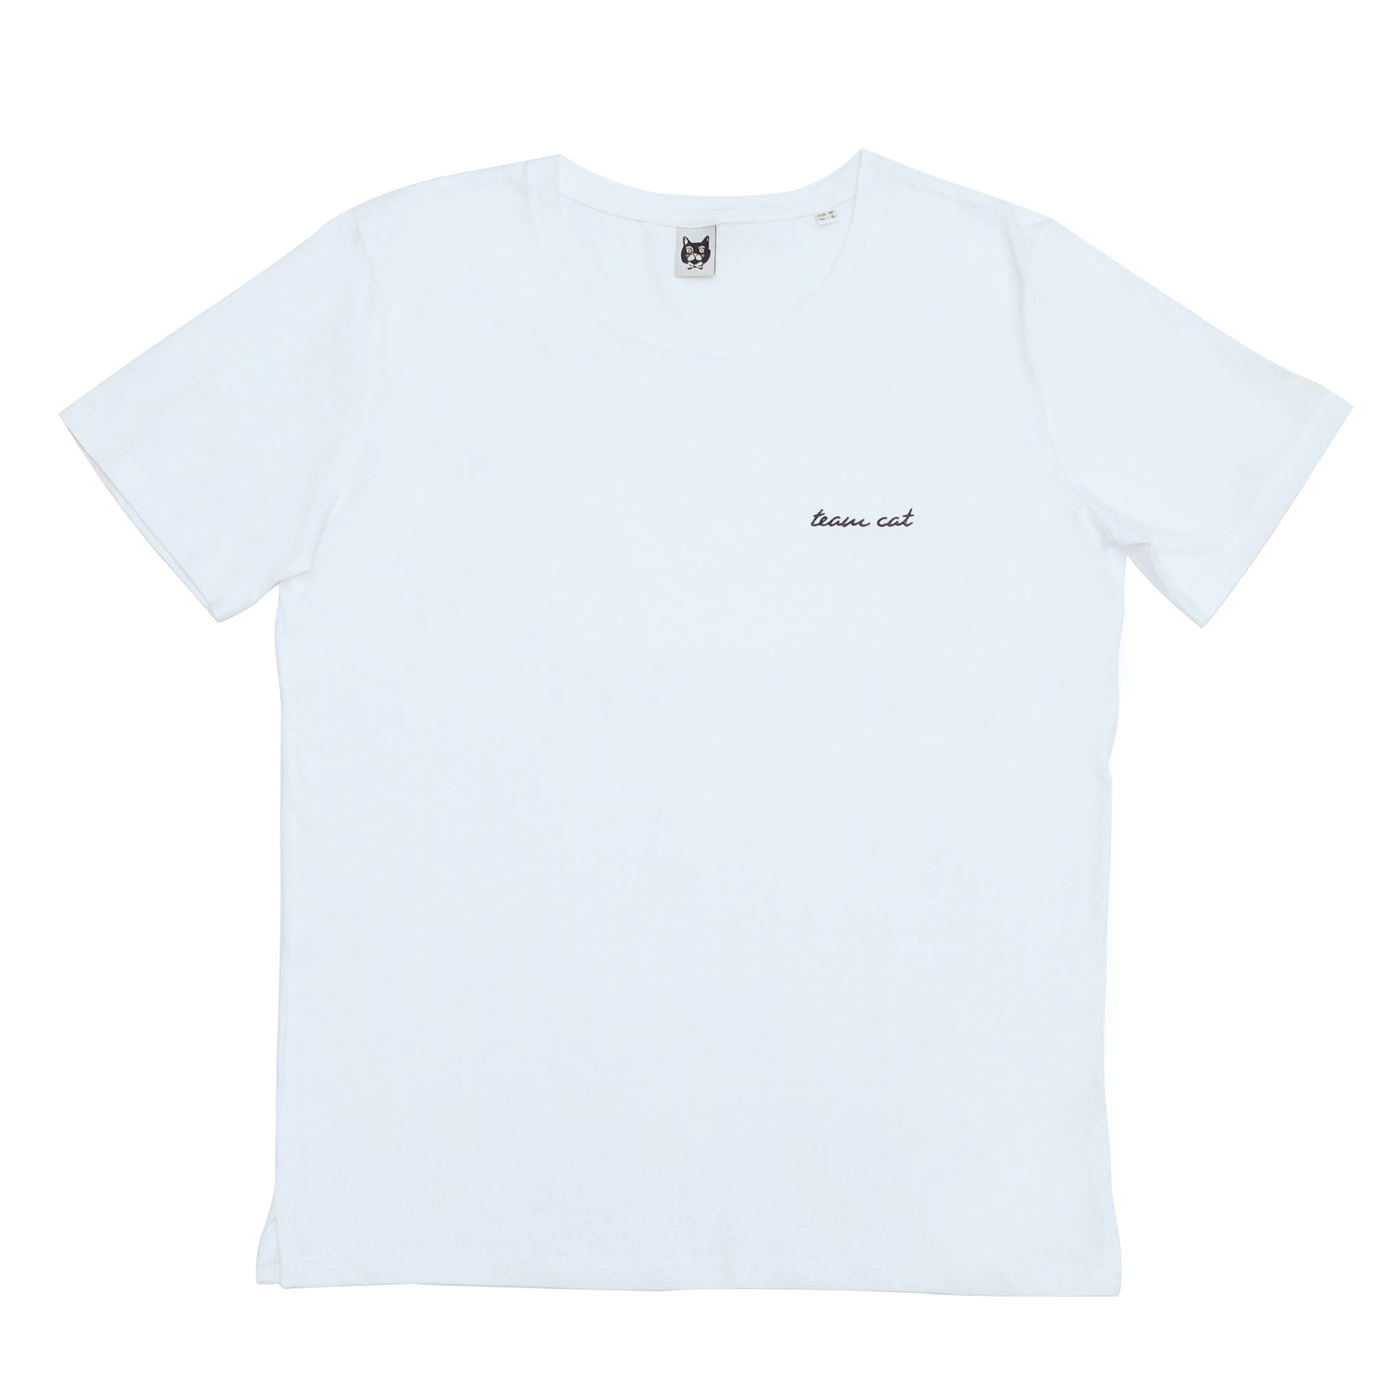 Team Cat T-Shirt White/Black Stitching